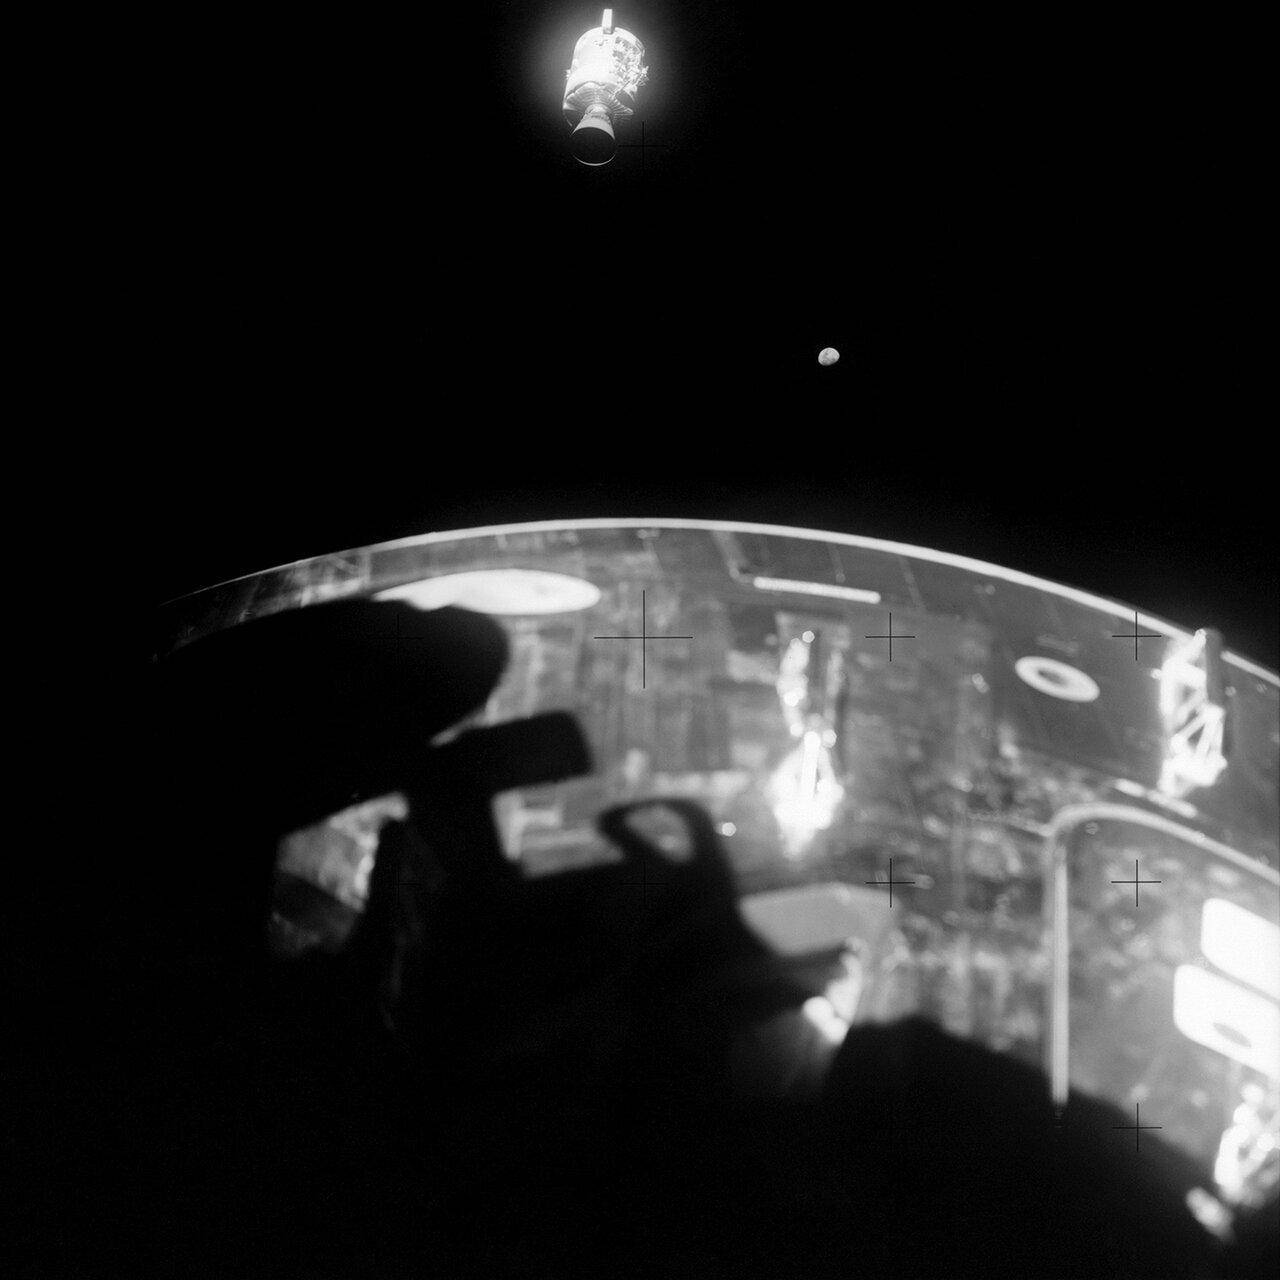 Modulo de servicio del Apolo XIII.jpg